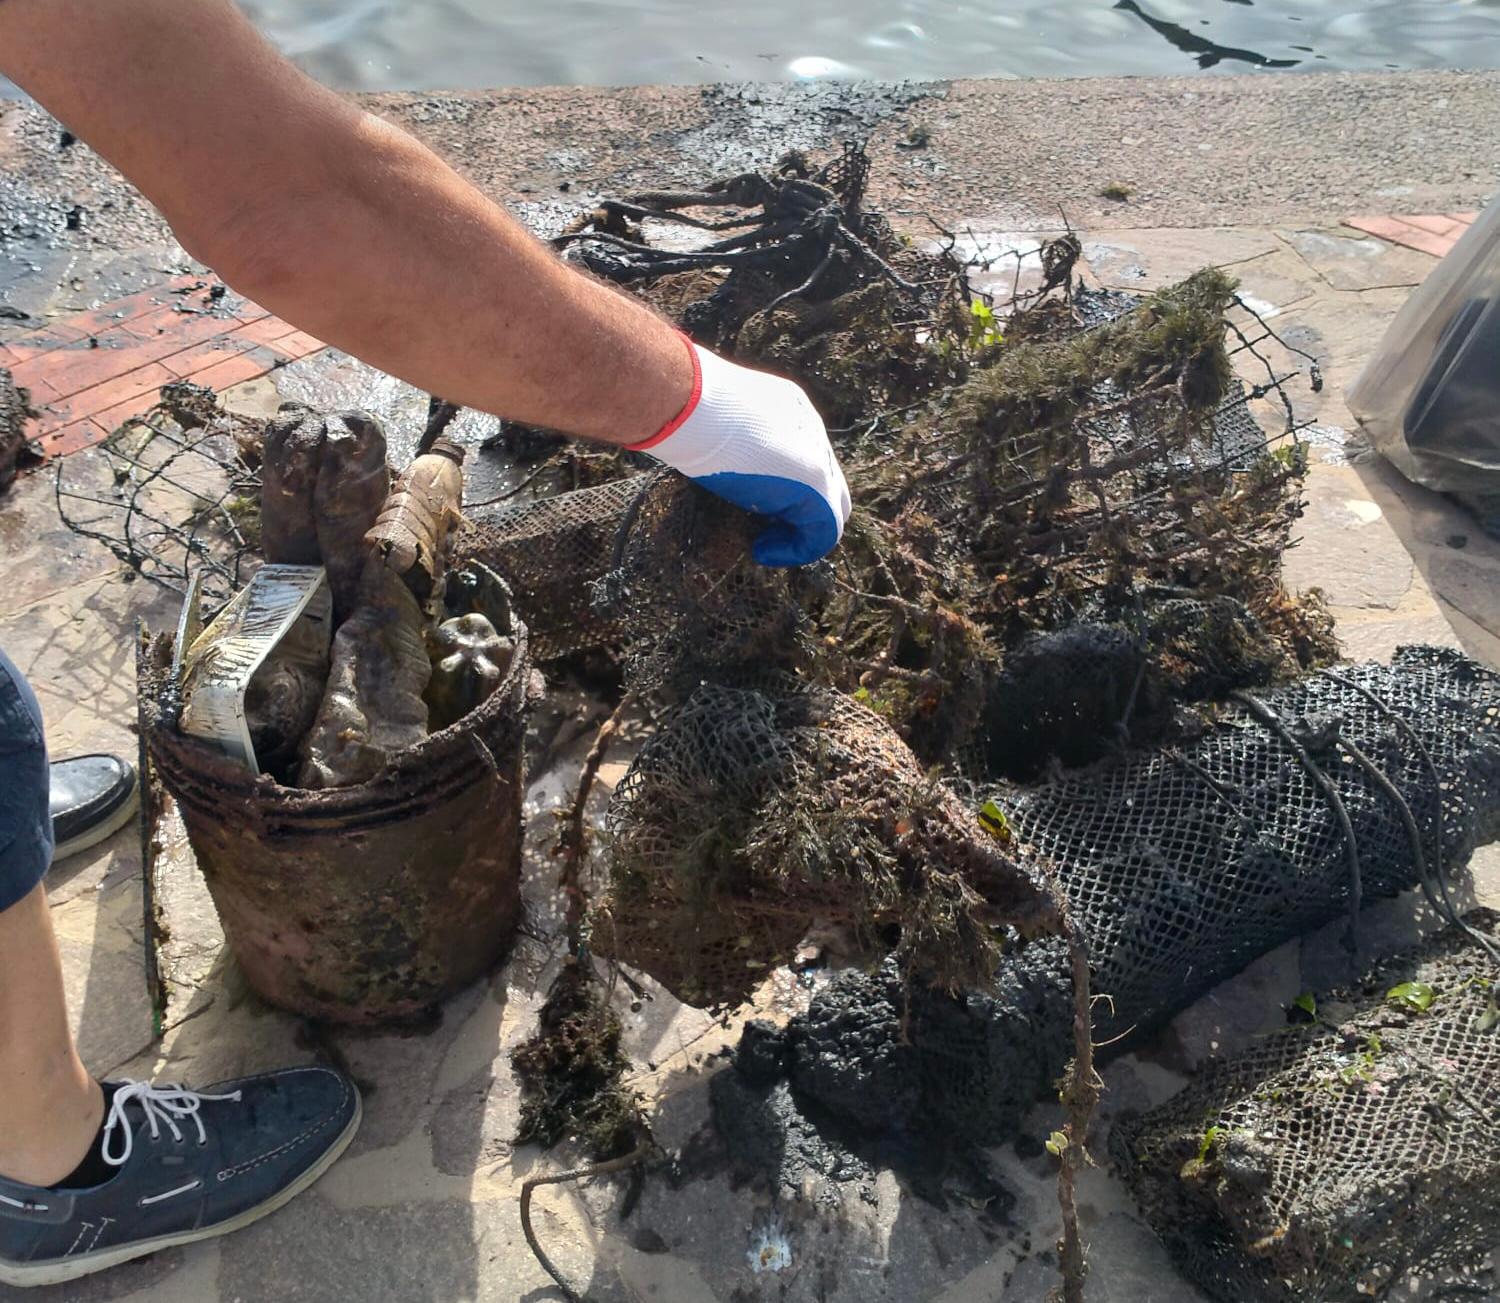 Alcuni rifiuti raccolti in mare (foto Fabio Murru)